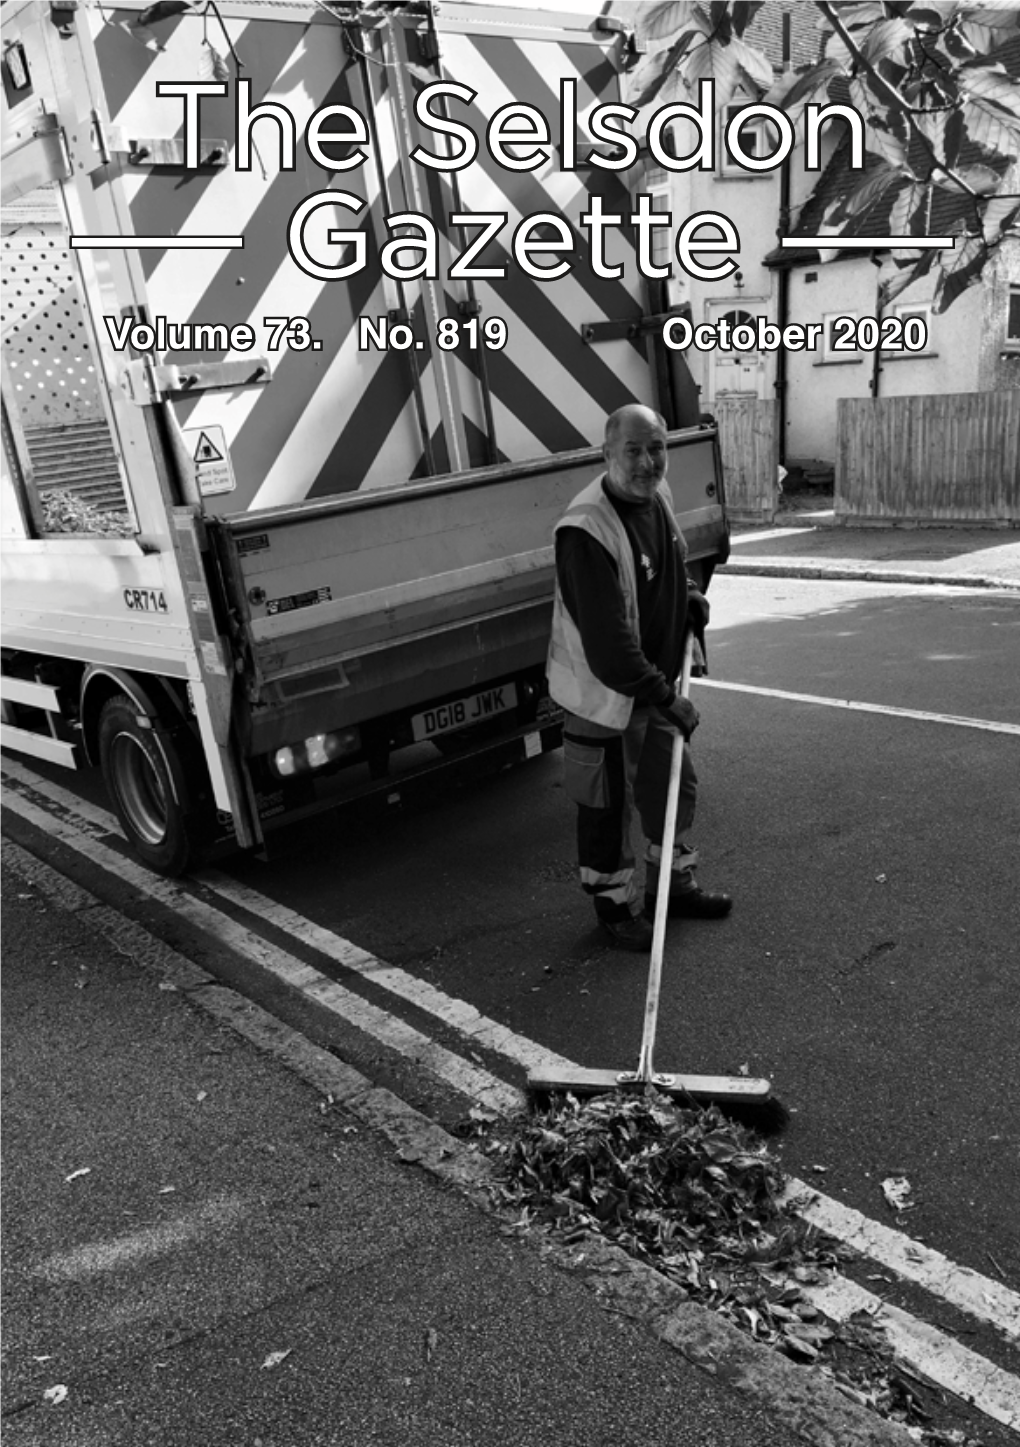 Gazette the Selsdon